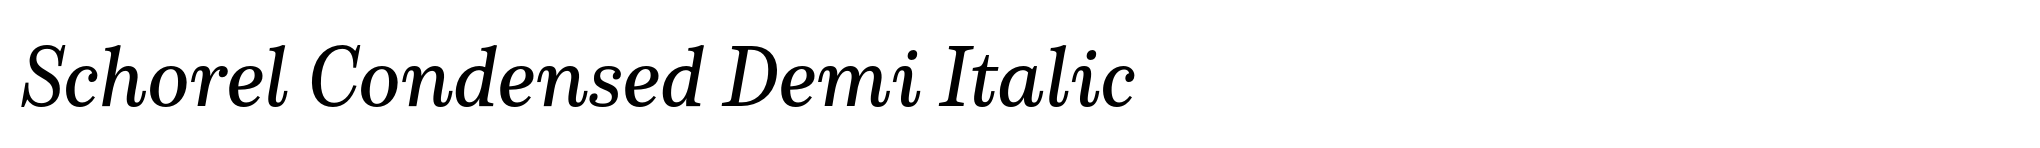 Schorel Condensed Demi Italic image